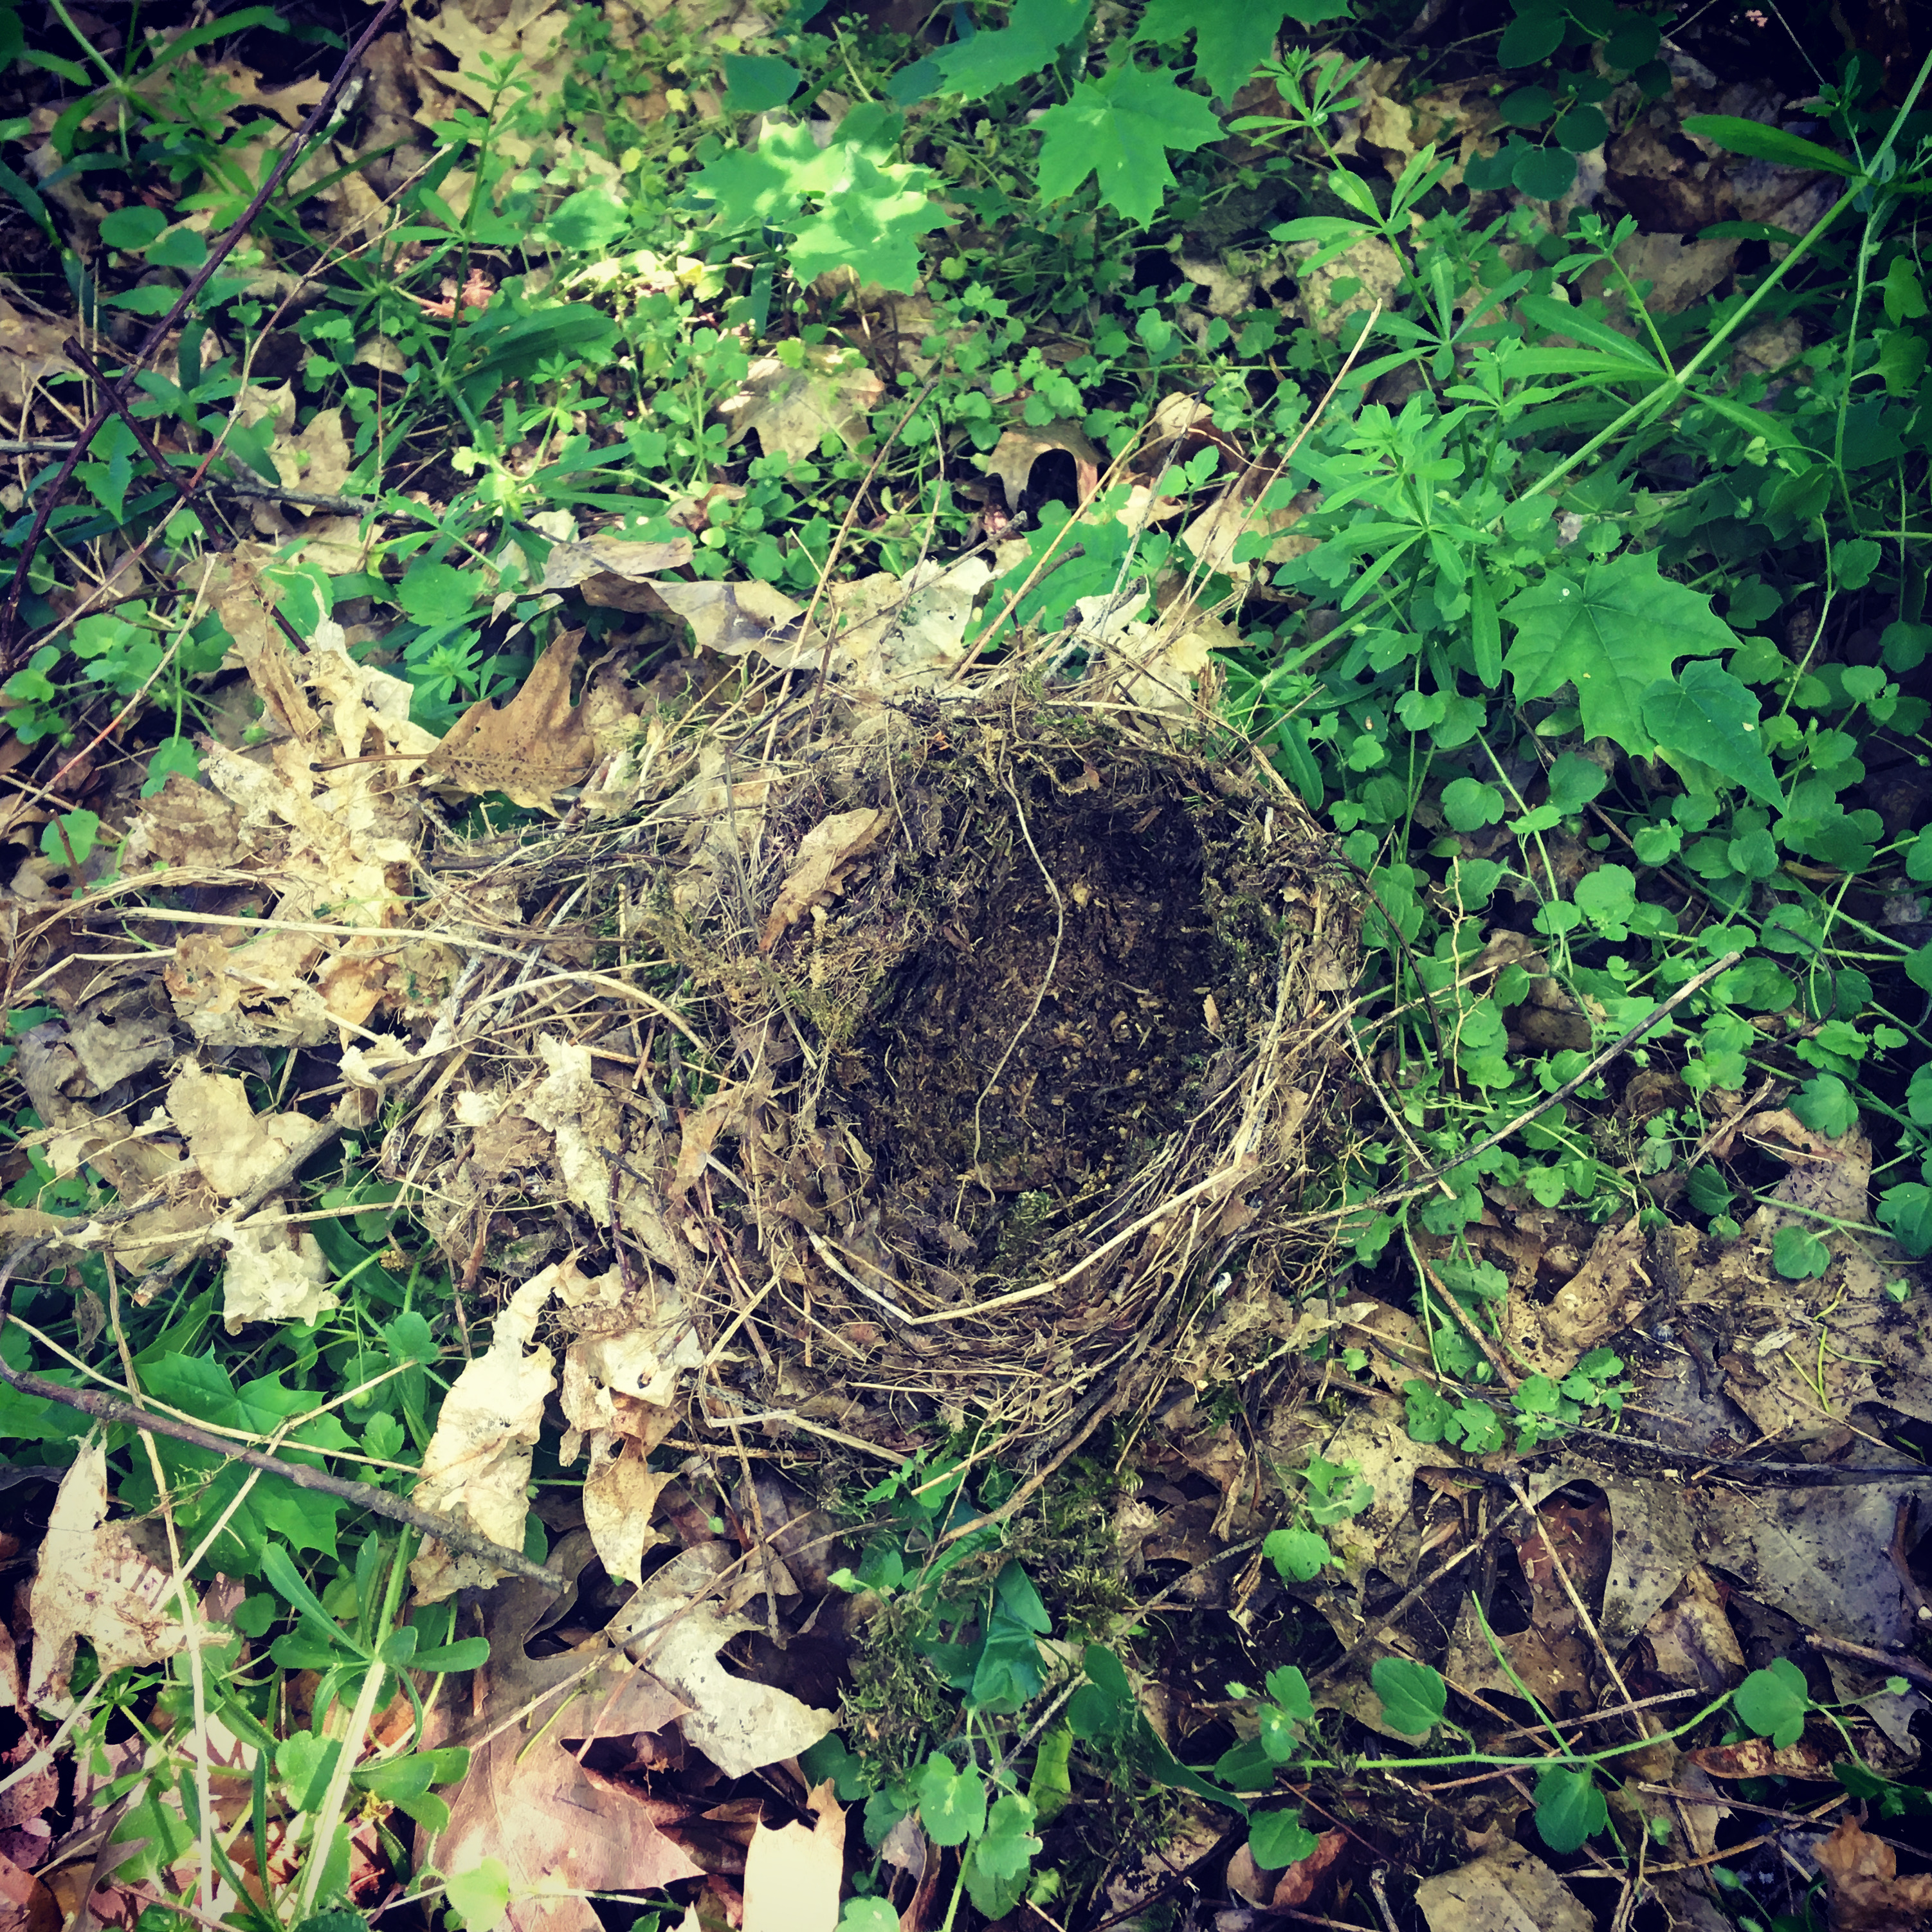 the fallen nest of a song thrush